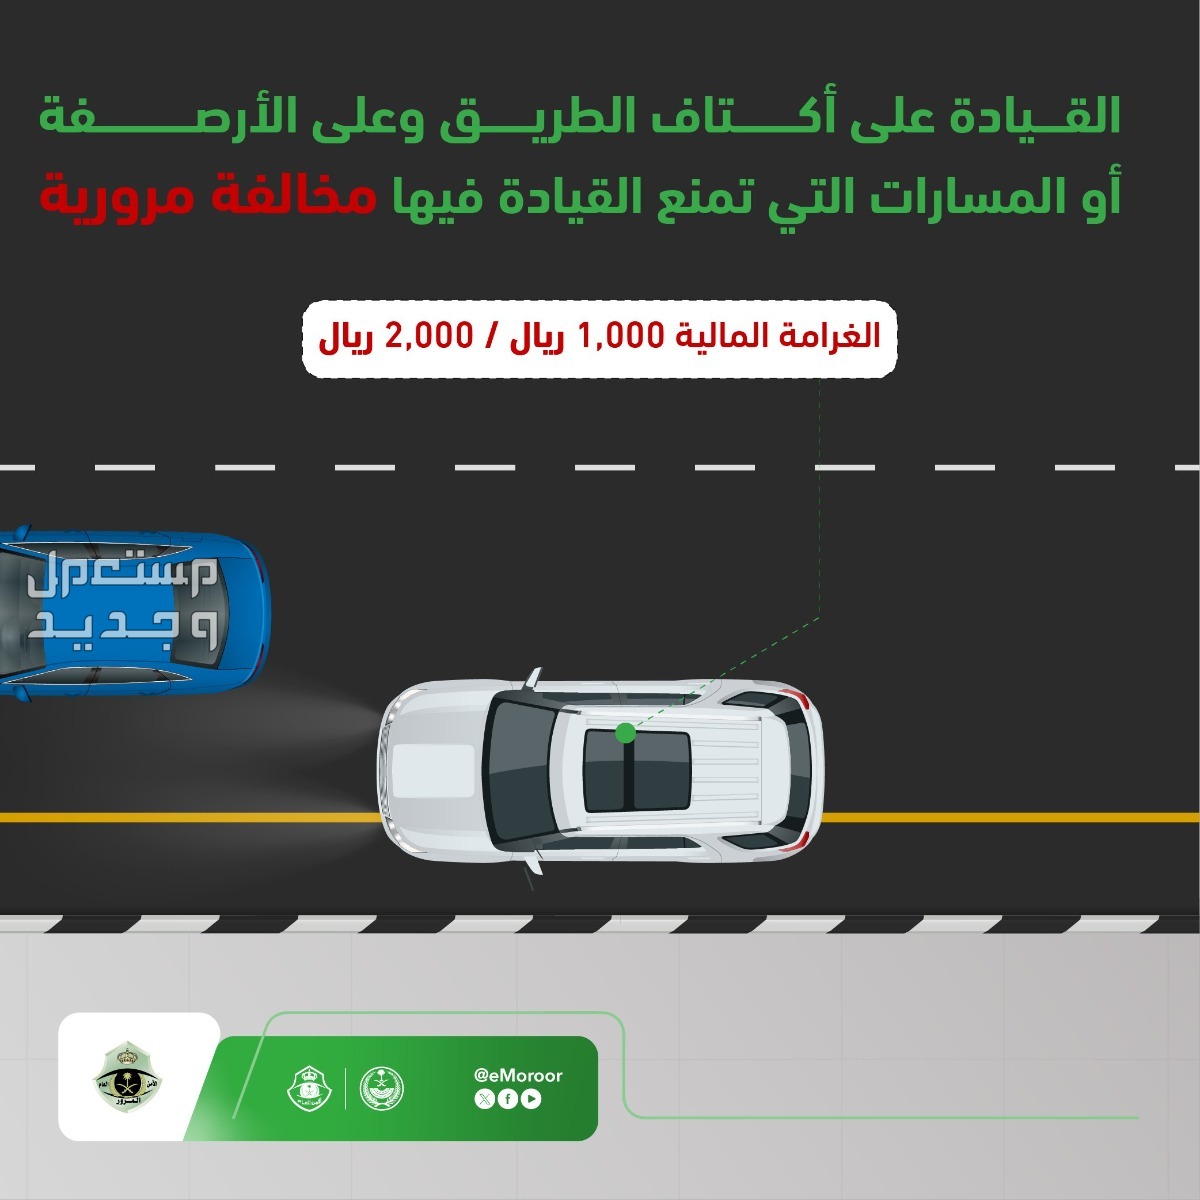 "المرور" يوضح قيمة مخالفة القيادة على الأرصفة والمسارات في الإمارات العربية المتحدة مخالفة القيادة على الأرصفة والمسارات